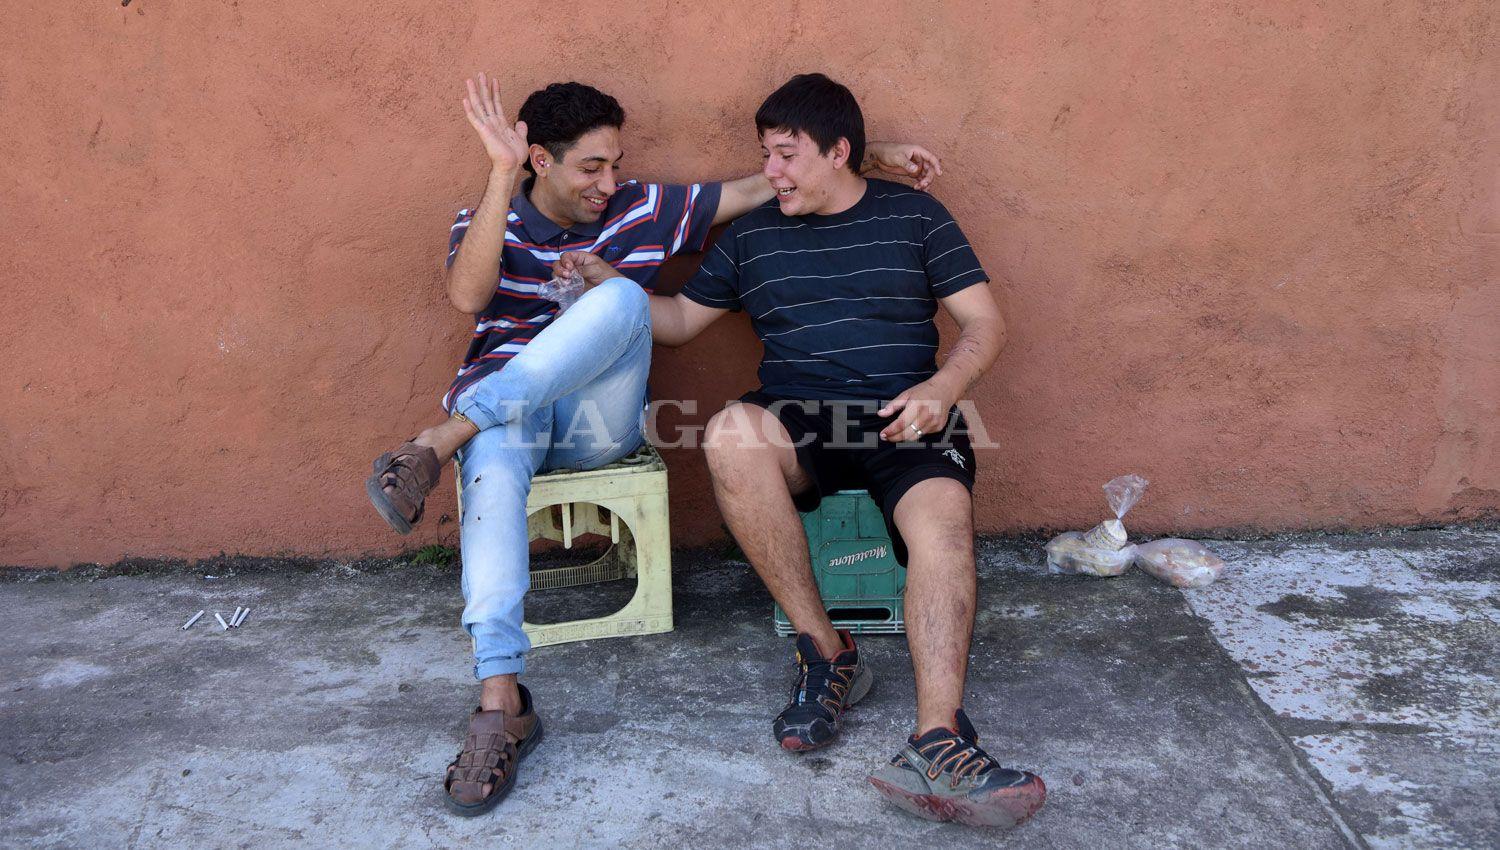 AMISTADES. Edgardo Monasterio todavía ayuda a José Ramos, un chico de la calle al que conoce desde la infancia.